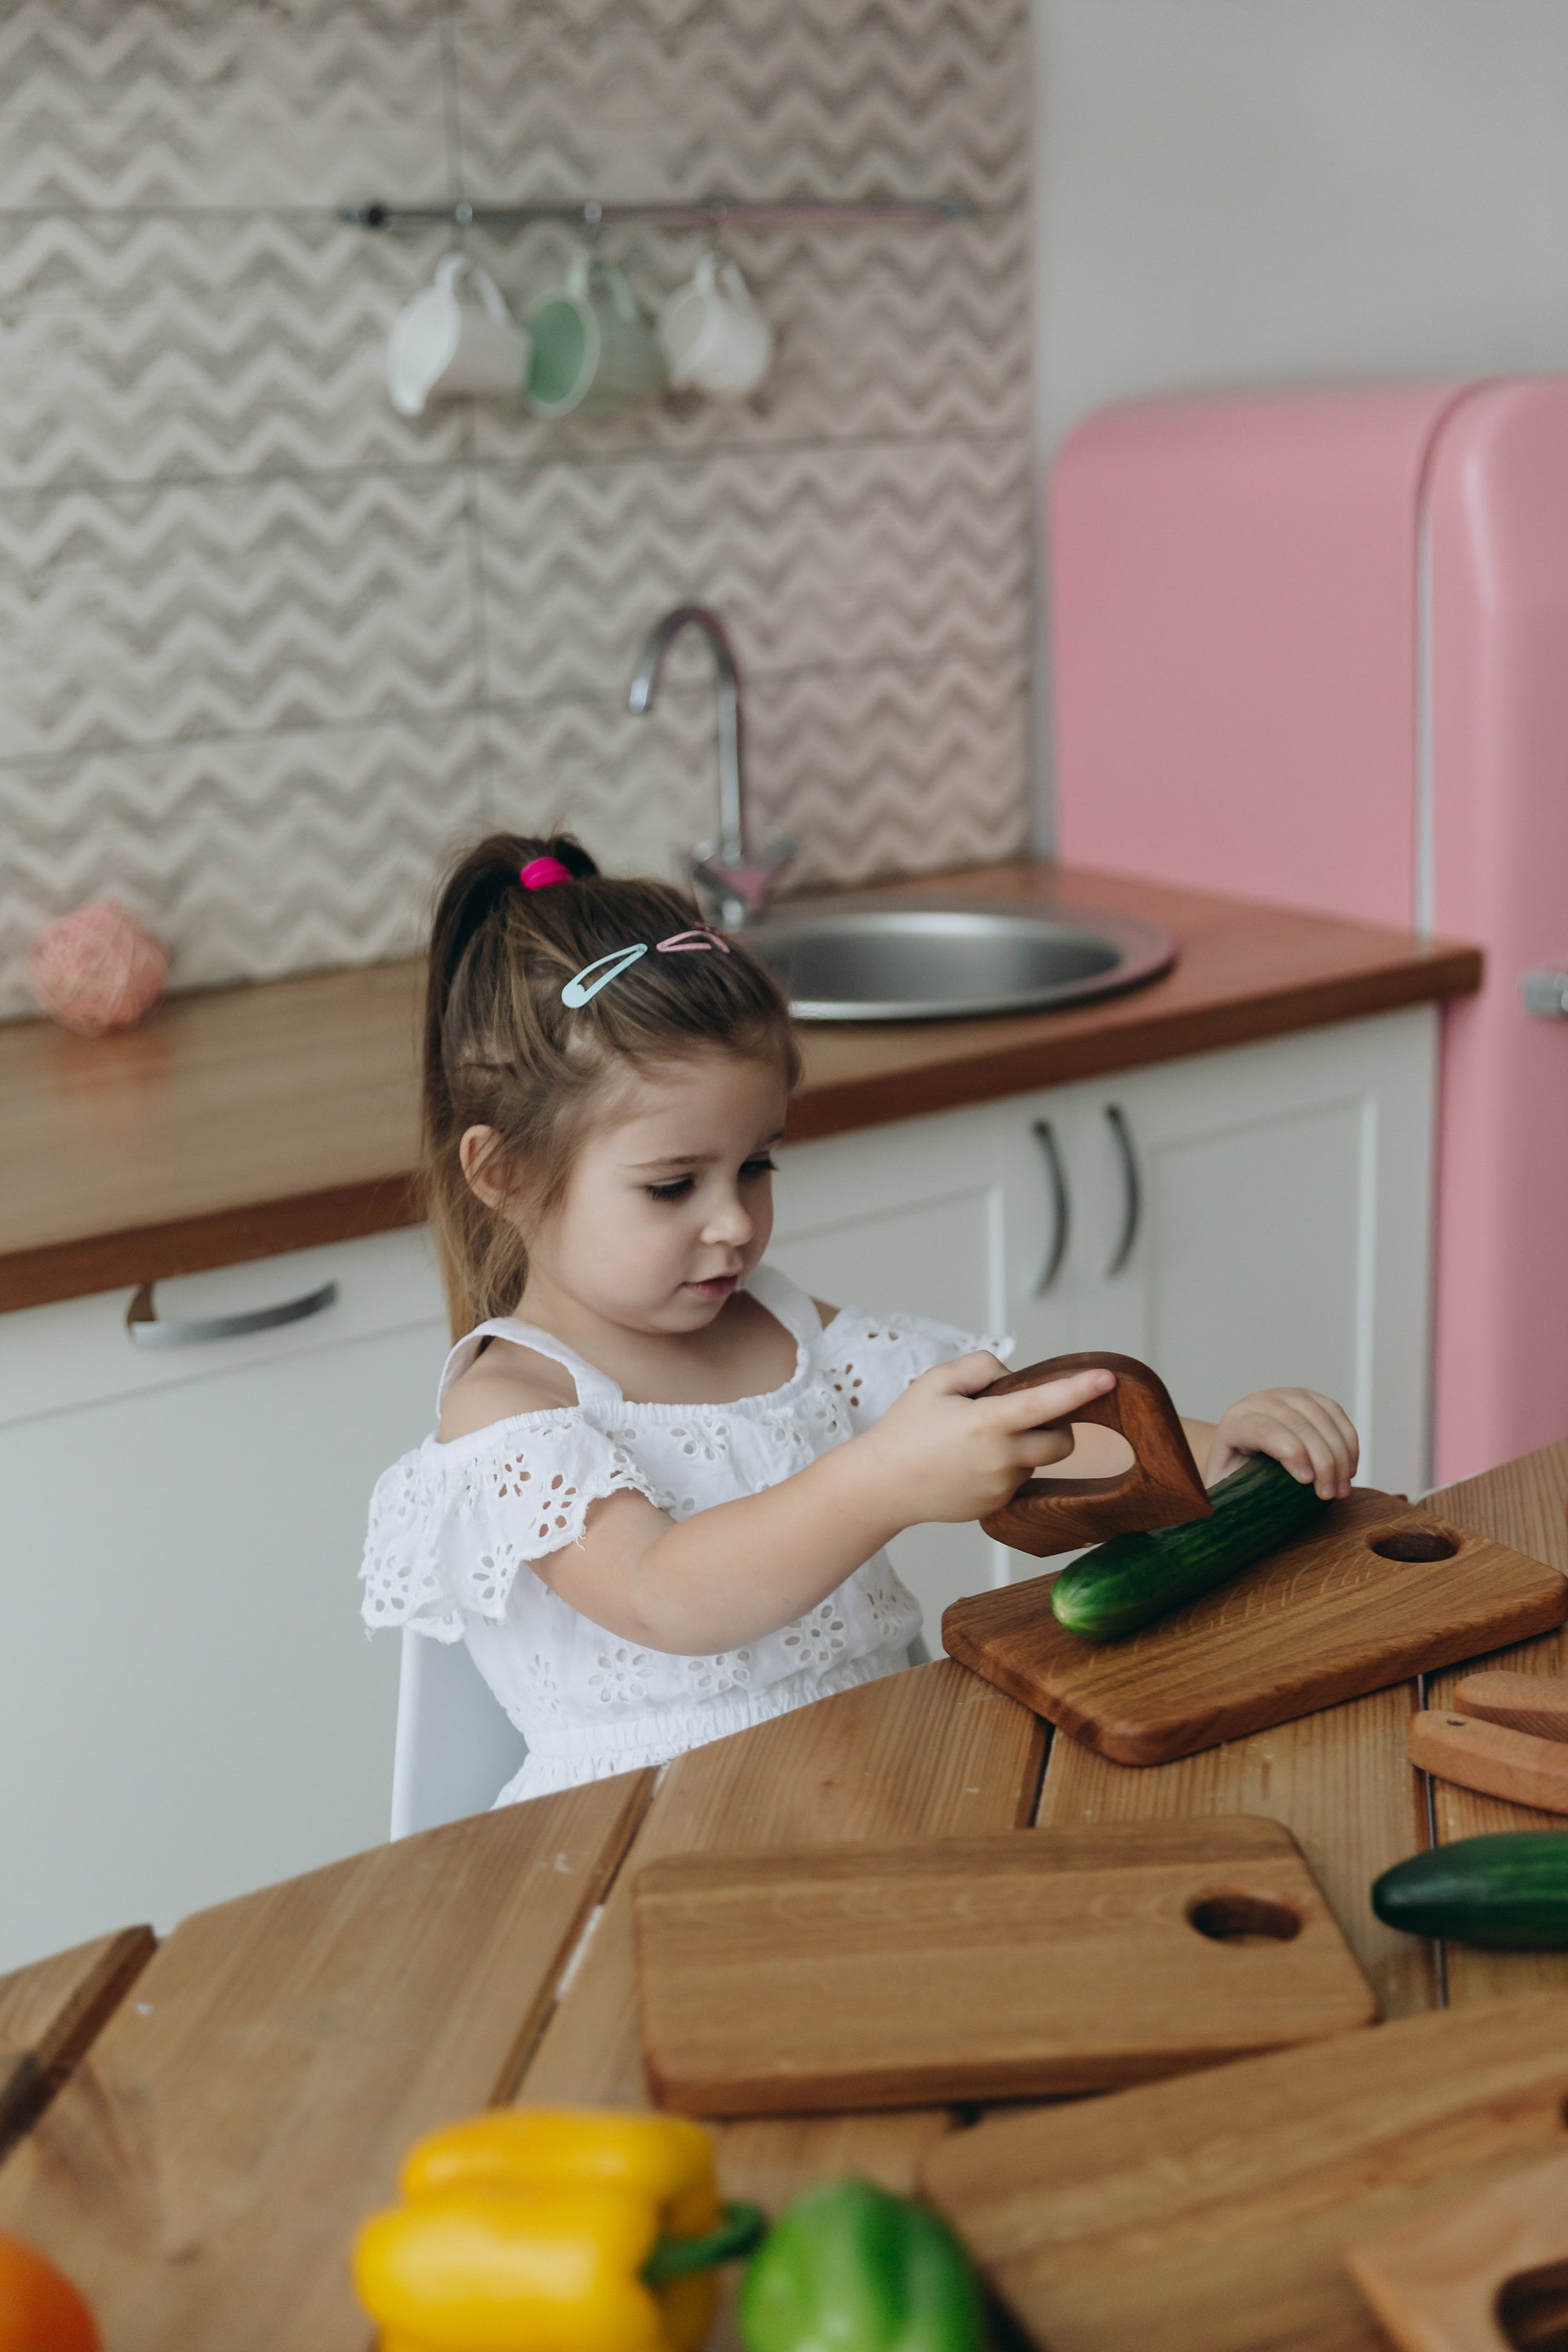  Cuchillo para niños pequeños para cocinar: cuchillo de madera  de arce para niños. Herramientas de cocina Montessori para niños pequeños.  Cuchillo de madera seguro para niños. Cuchillo Montessori. : Hogar y